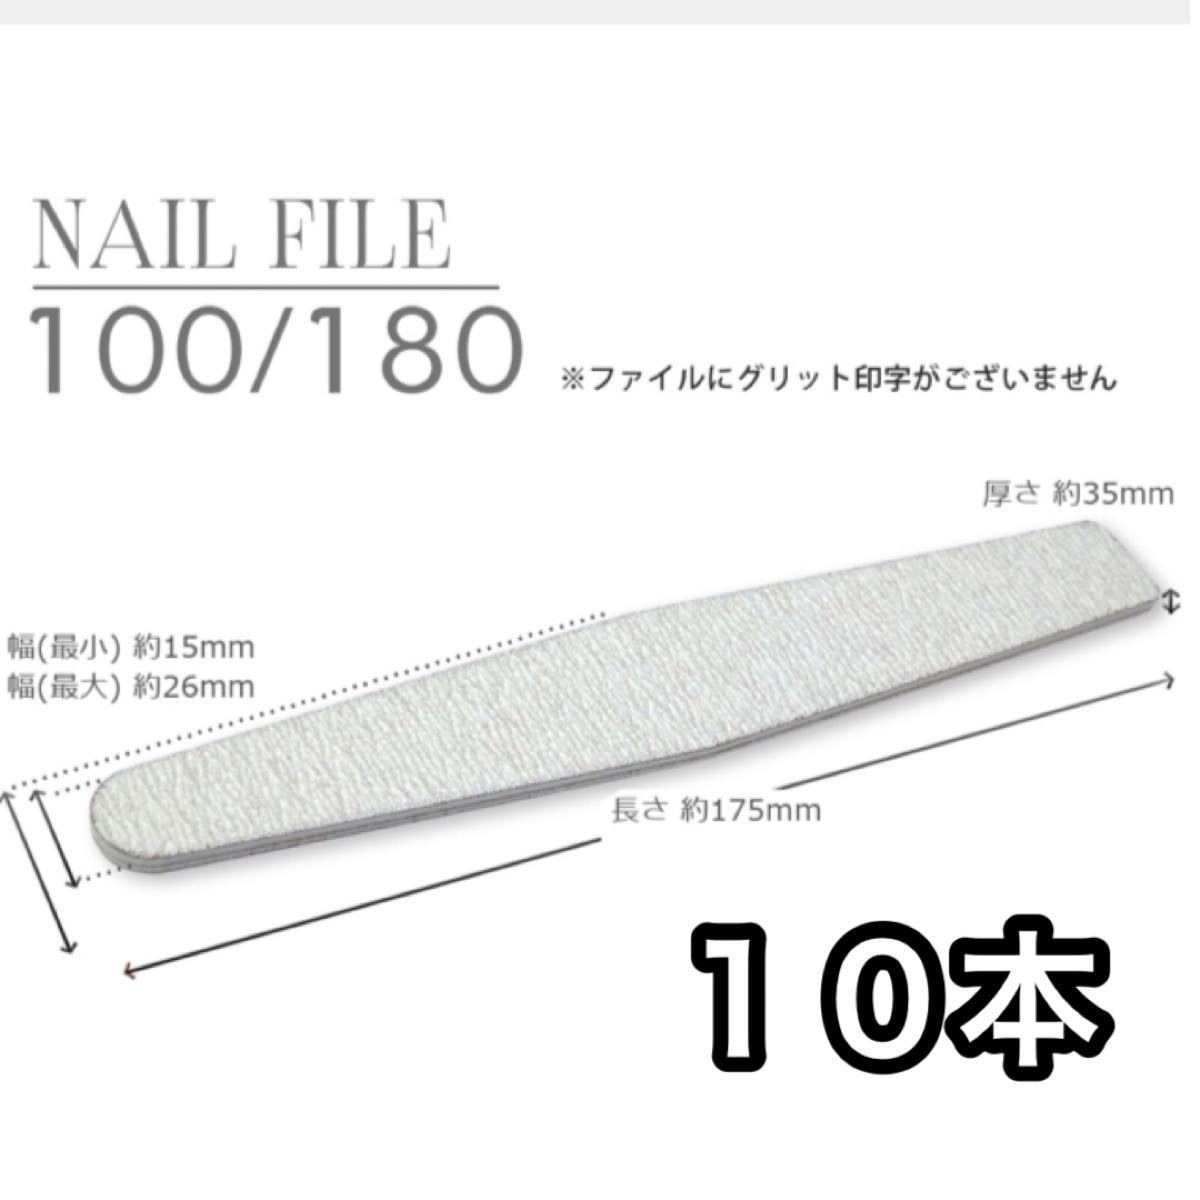 ネイルファイル 10本 100 180 ファイル ネイル ジェル レジン ジェルネイル 爪 爪手入れ 使い捨て  ダイアモンド型